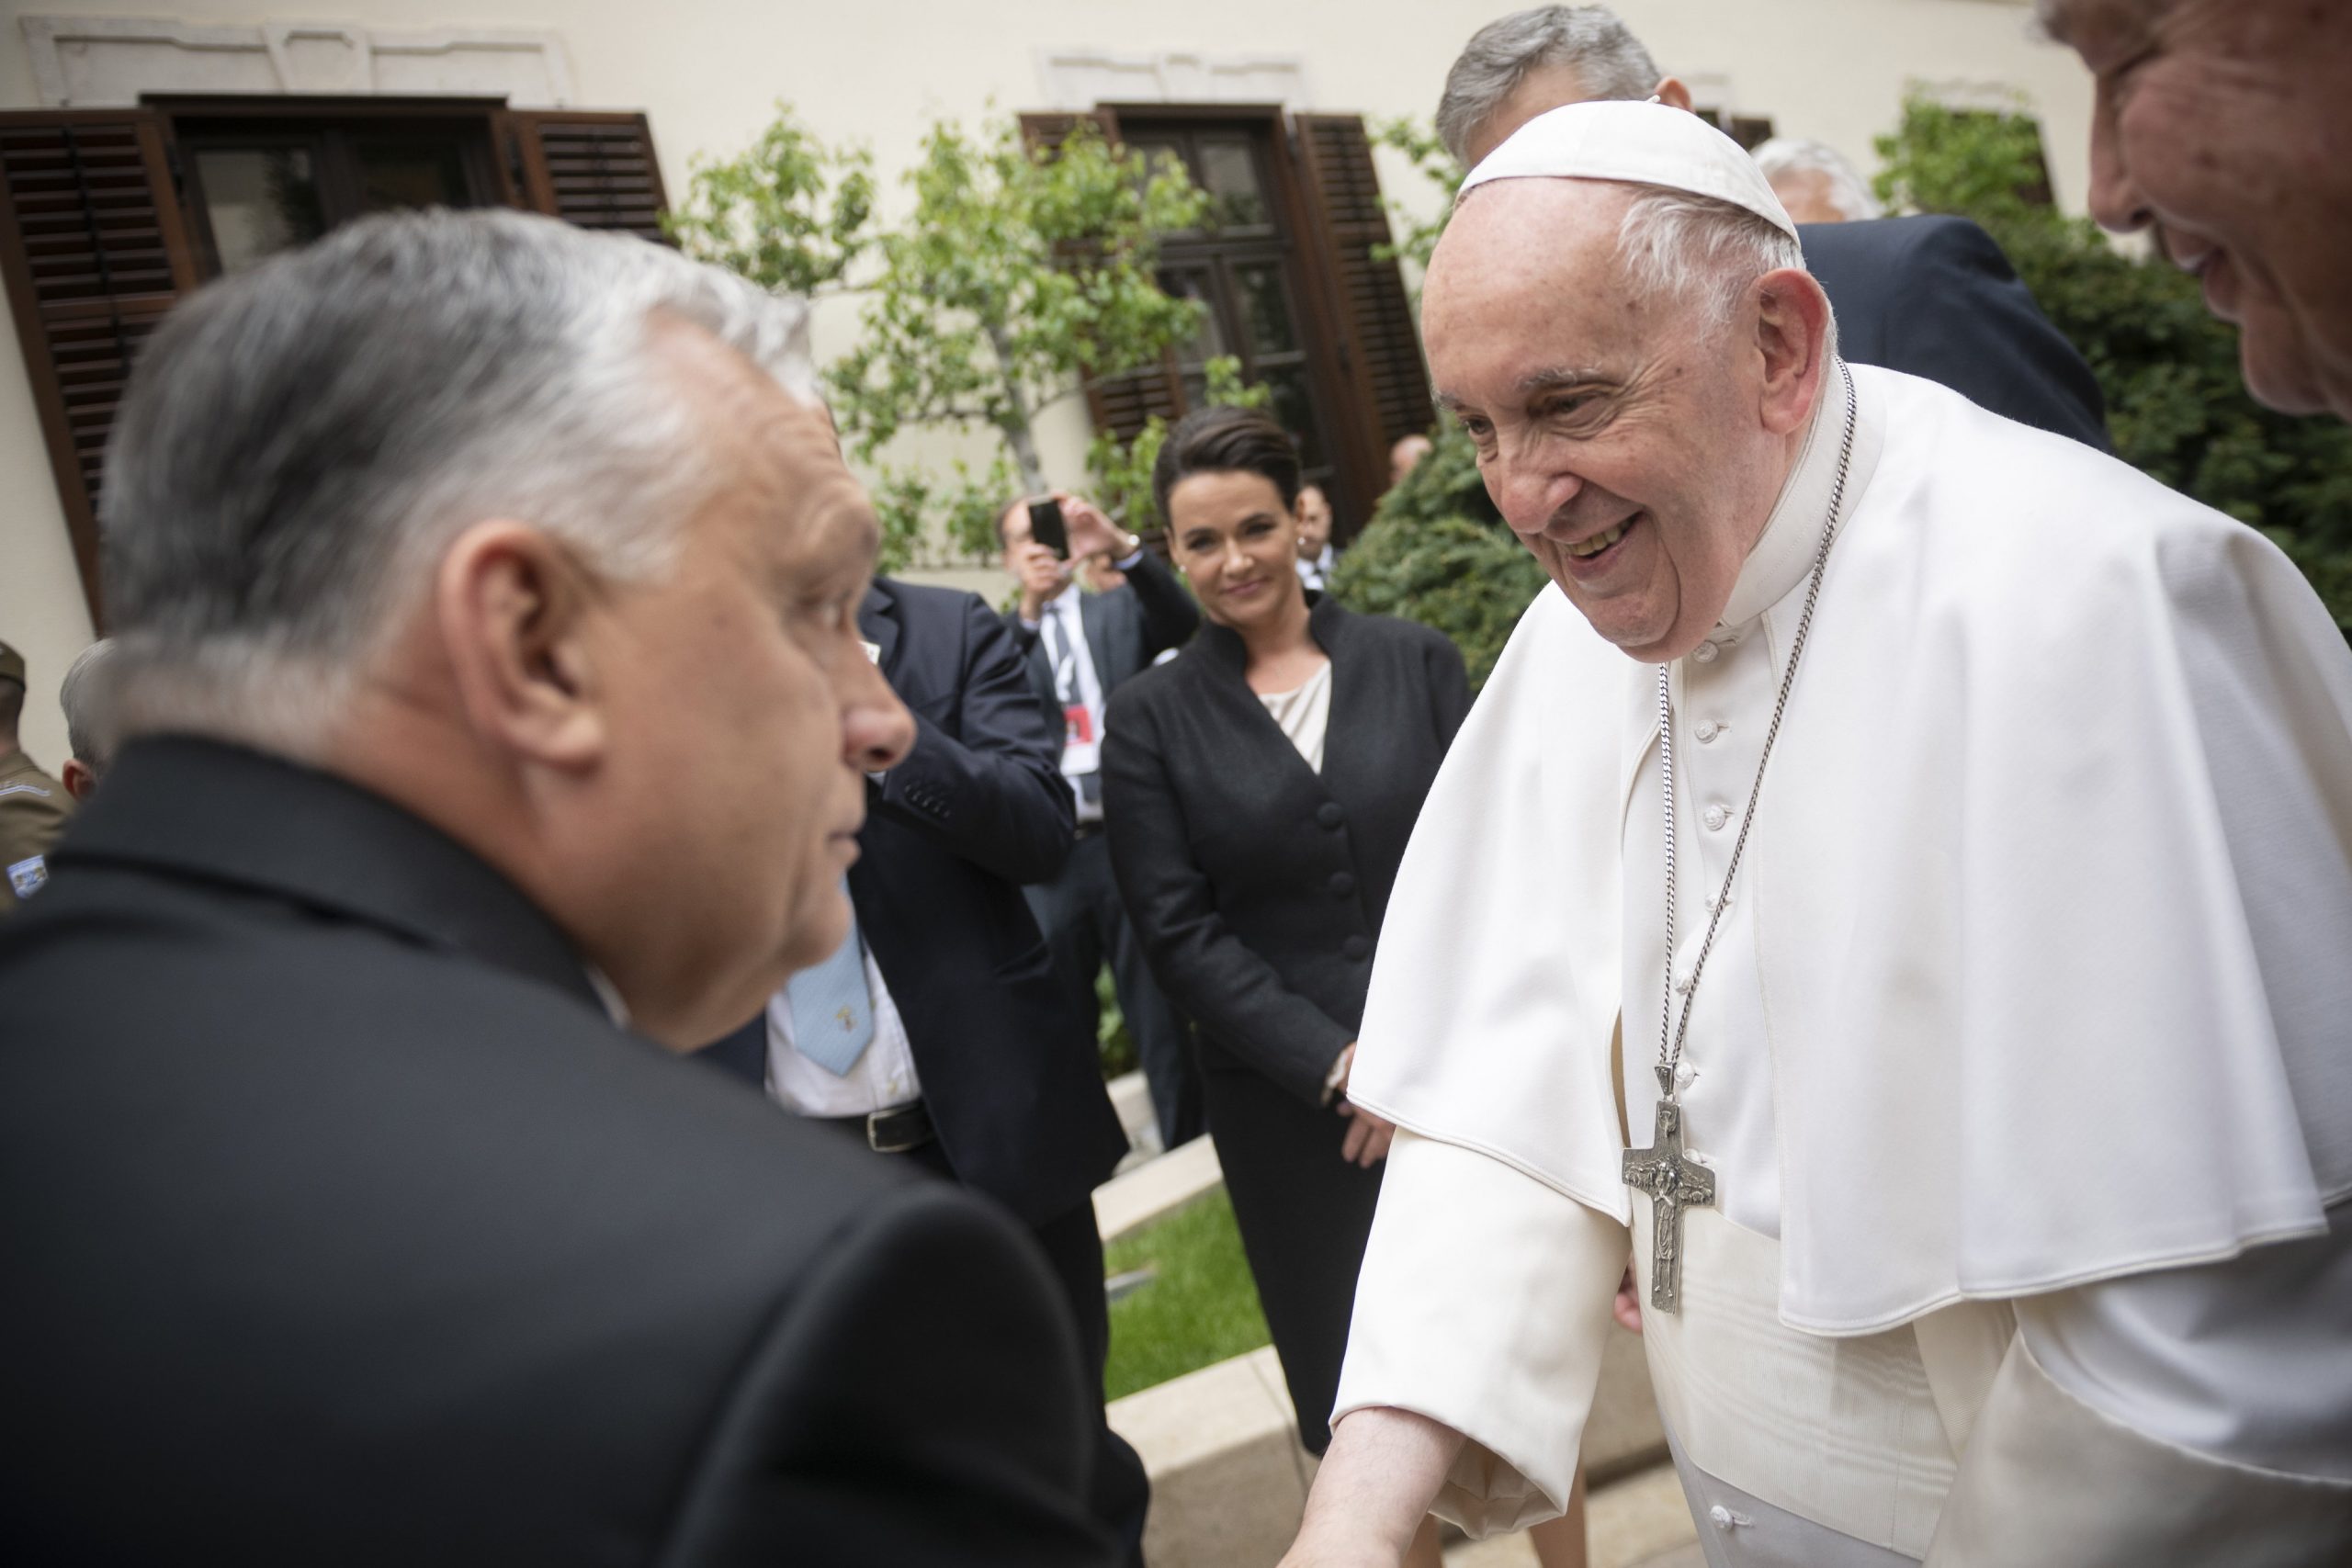 The American Conservative: Papst und Viktor Orbán sind die einzigen, die auf Frieden drängen